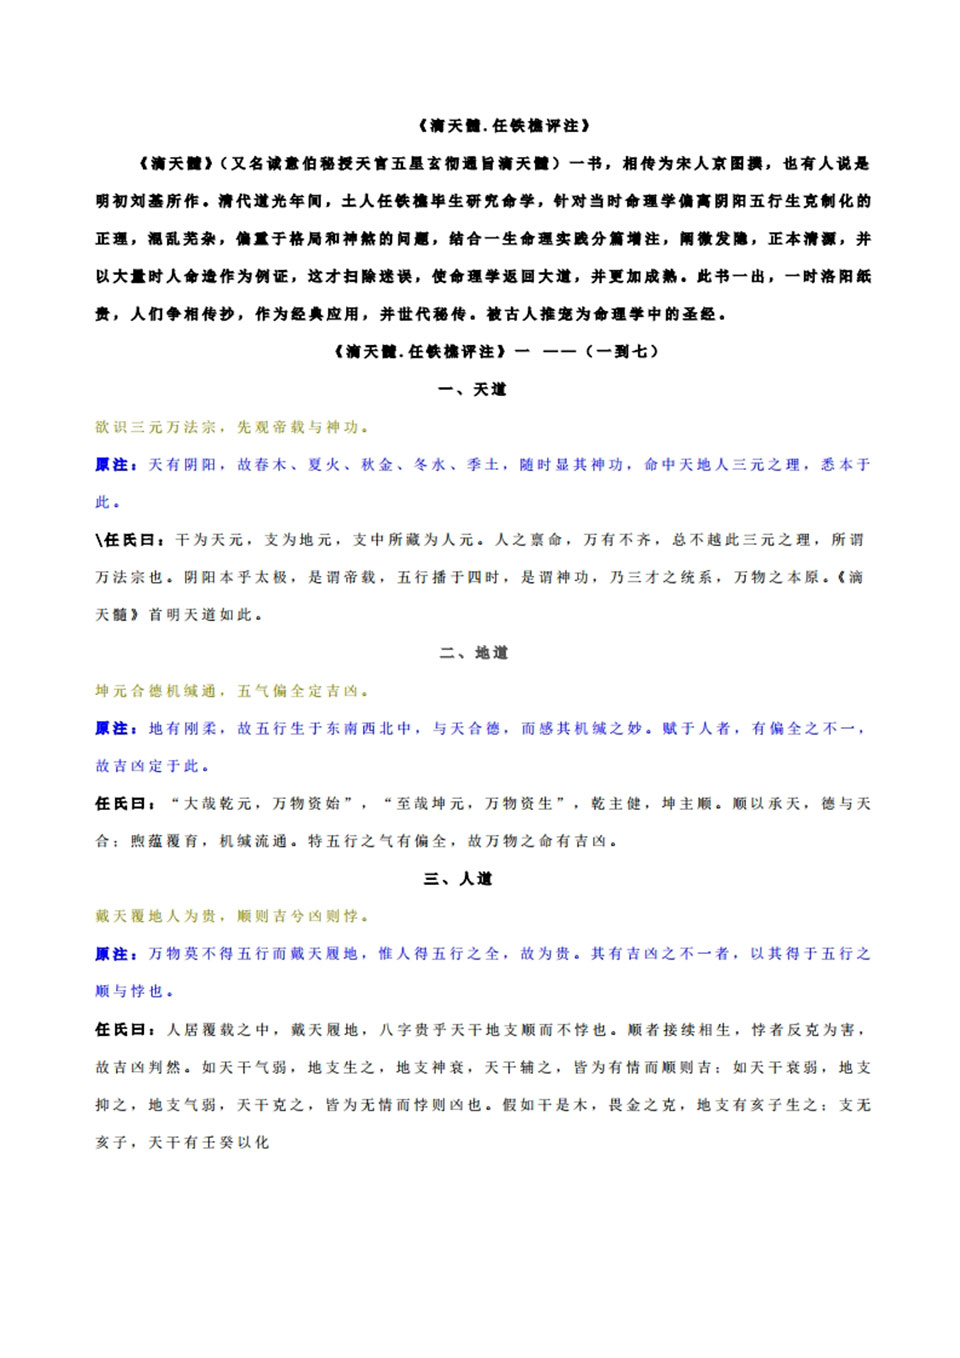 滴天髓任铁樵评注135页.pdf